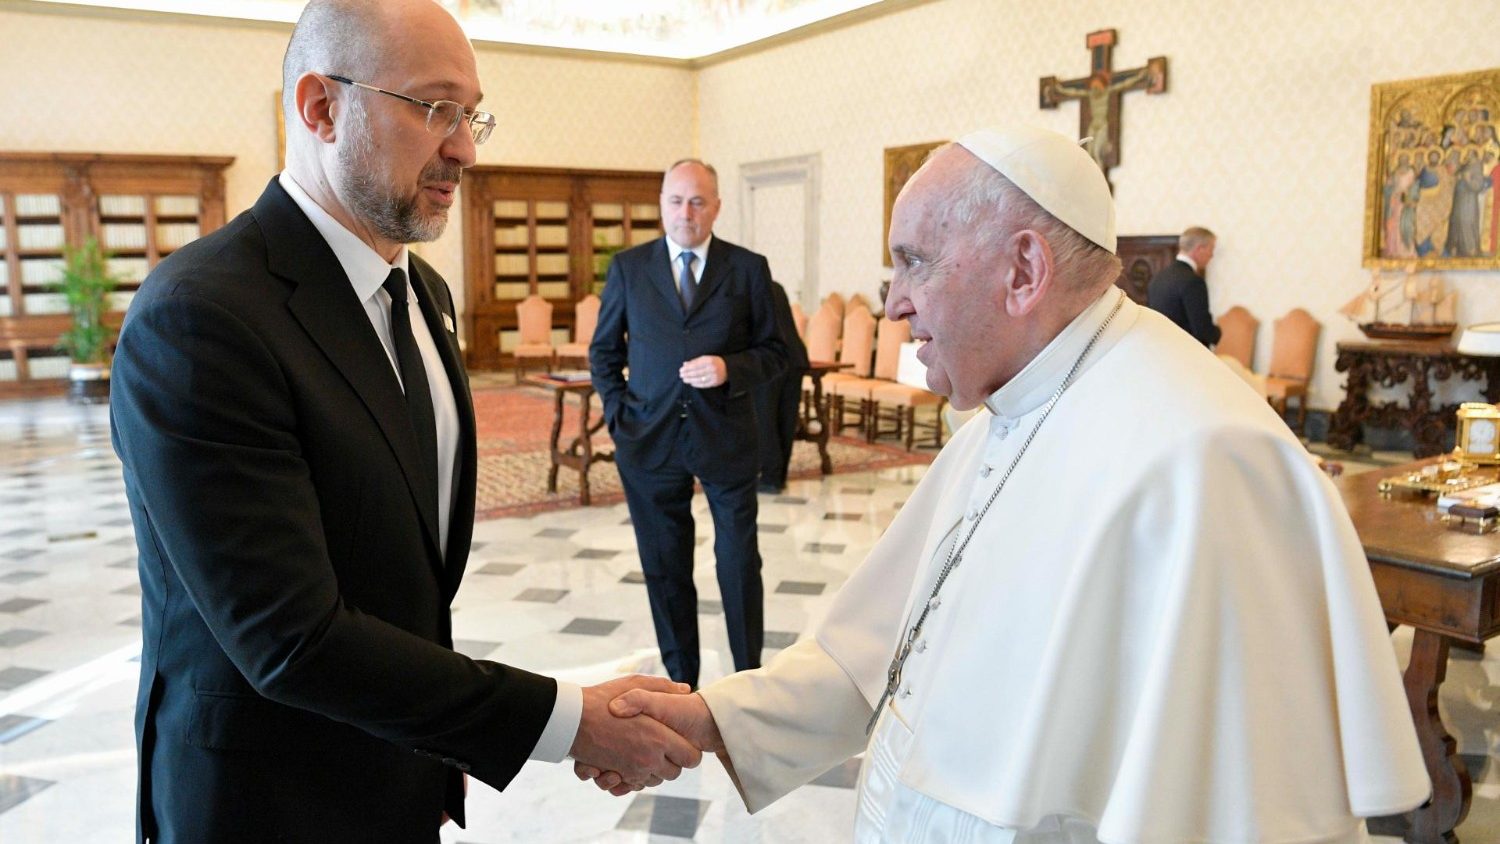 Папа Римский встретился с премьер-министром Украины (+ ФОТО)